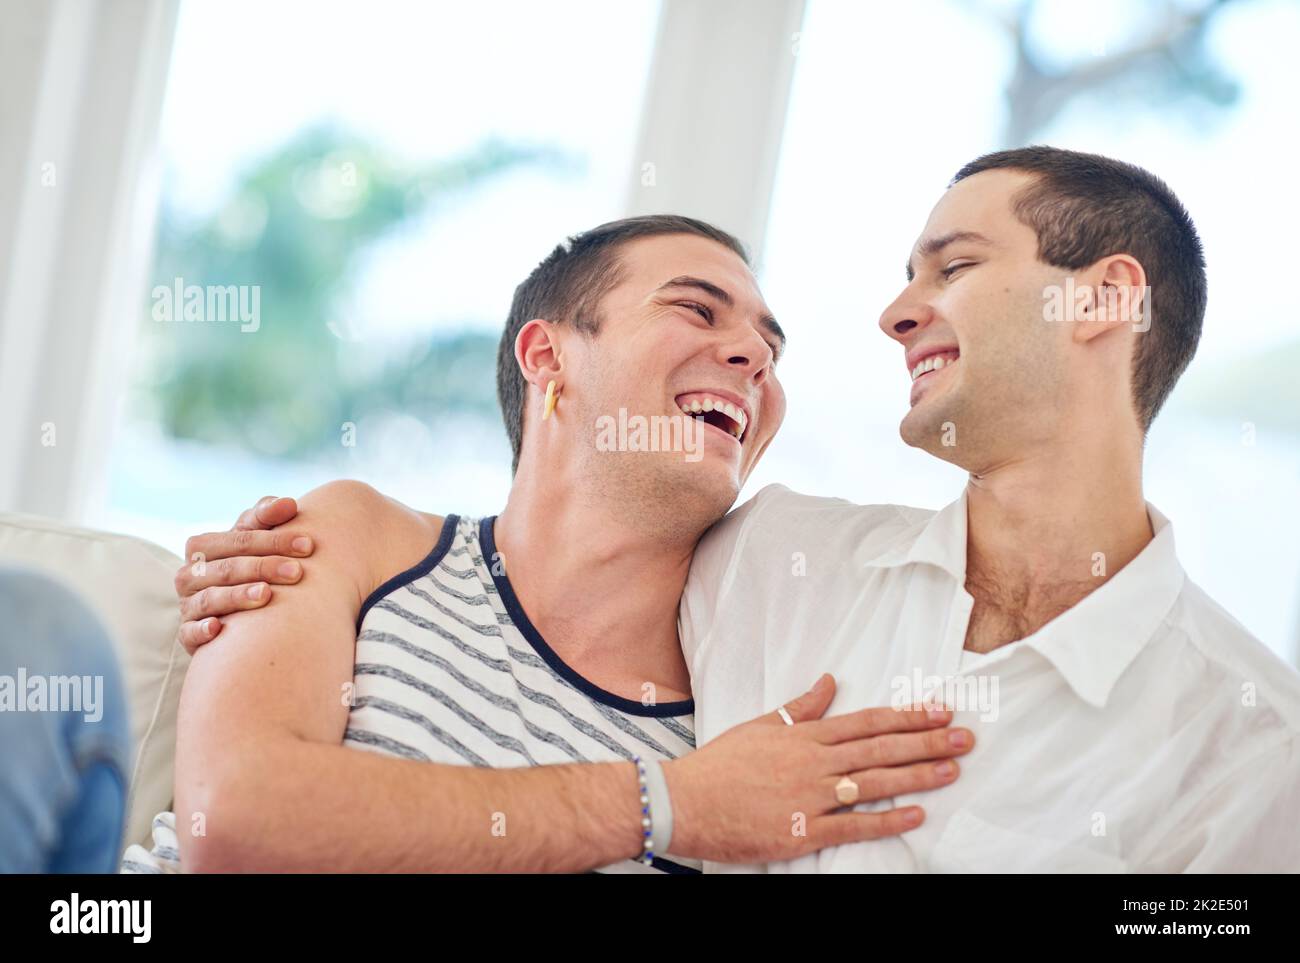 Notre maison est remplie d'amour et de rire. Photo d'un couple gay se détendant ensemble à la maison. Banque D'Images